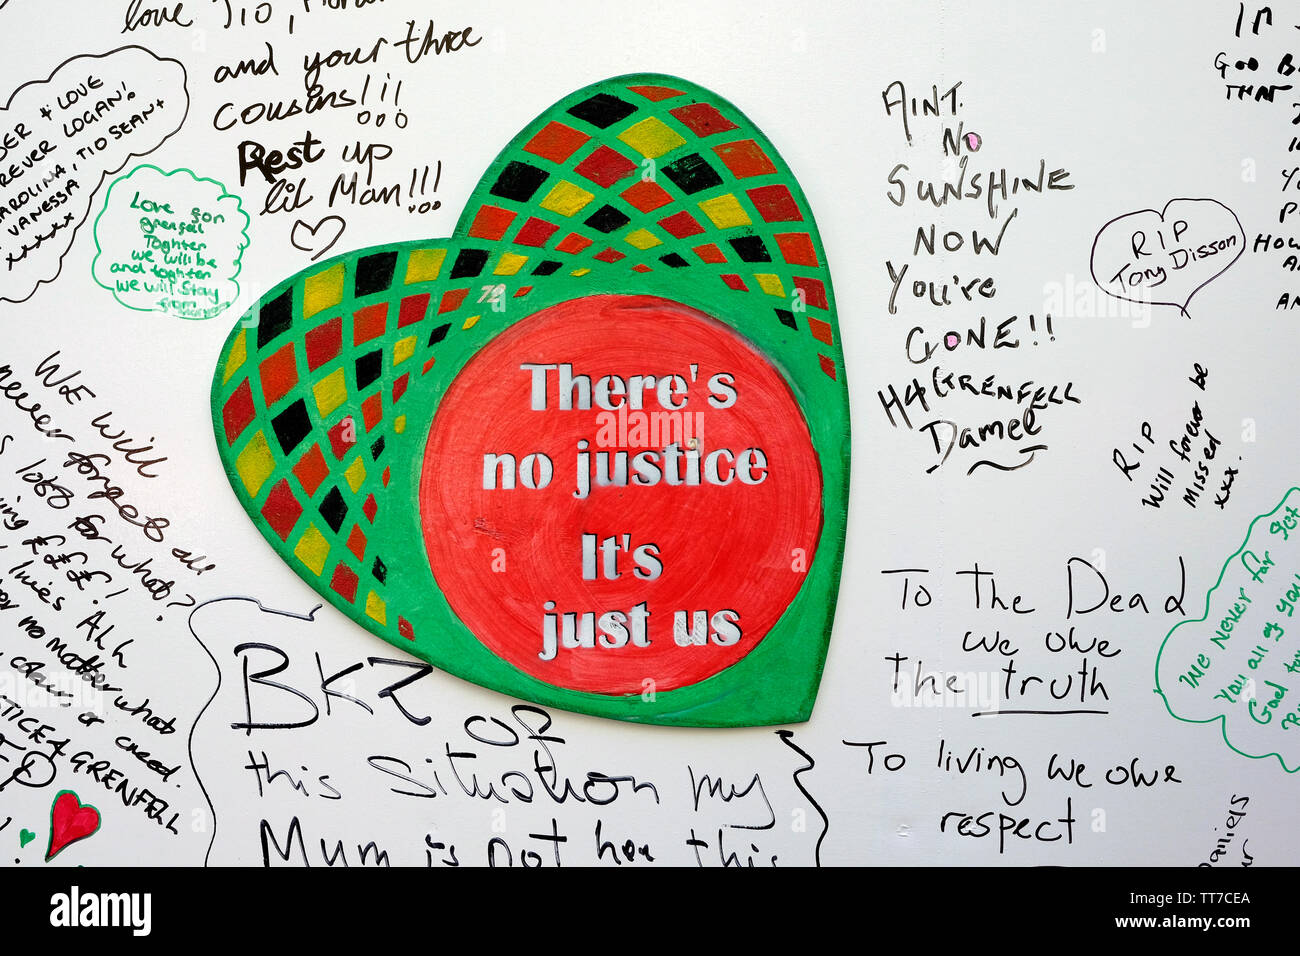 Un signe en forme de coeur la lecture de ''il n'y a pas de justice, tout nous' à gauche sur un mur, pour marquer le deuxième anniversaire de la tragédie de Grenfell. Banque D'Images